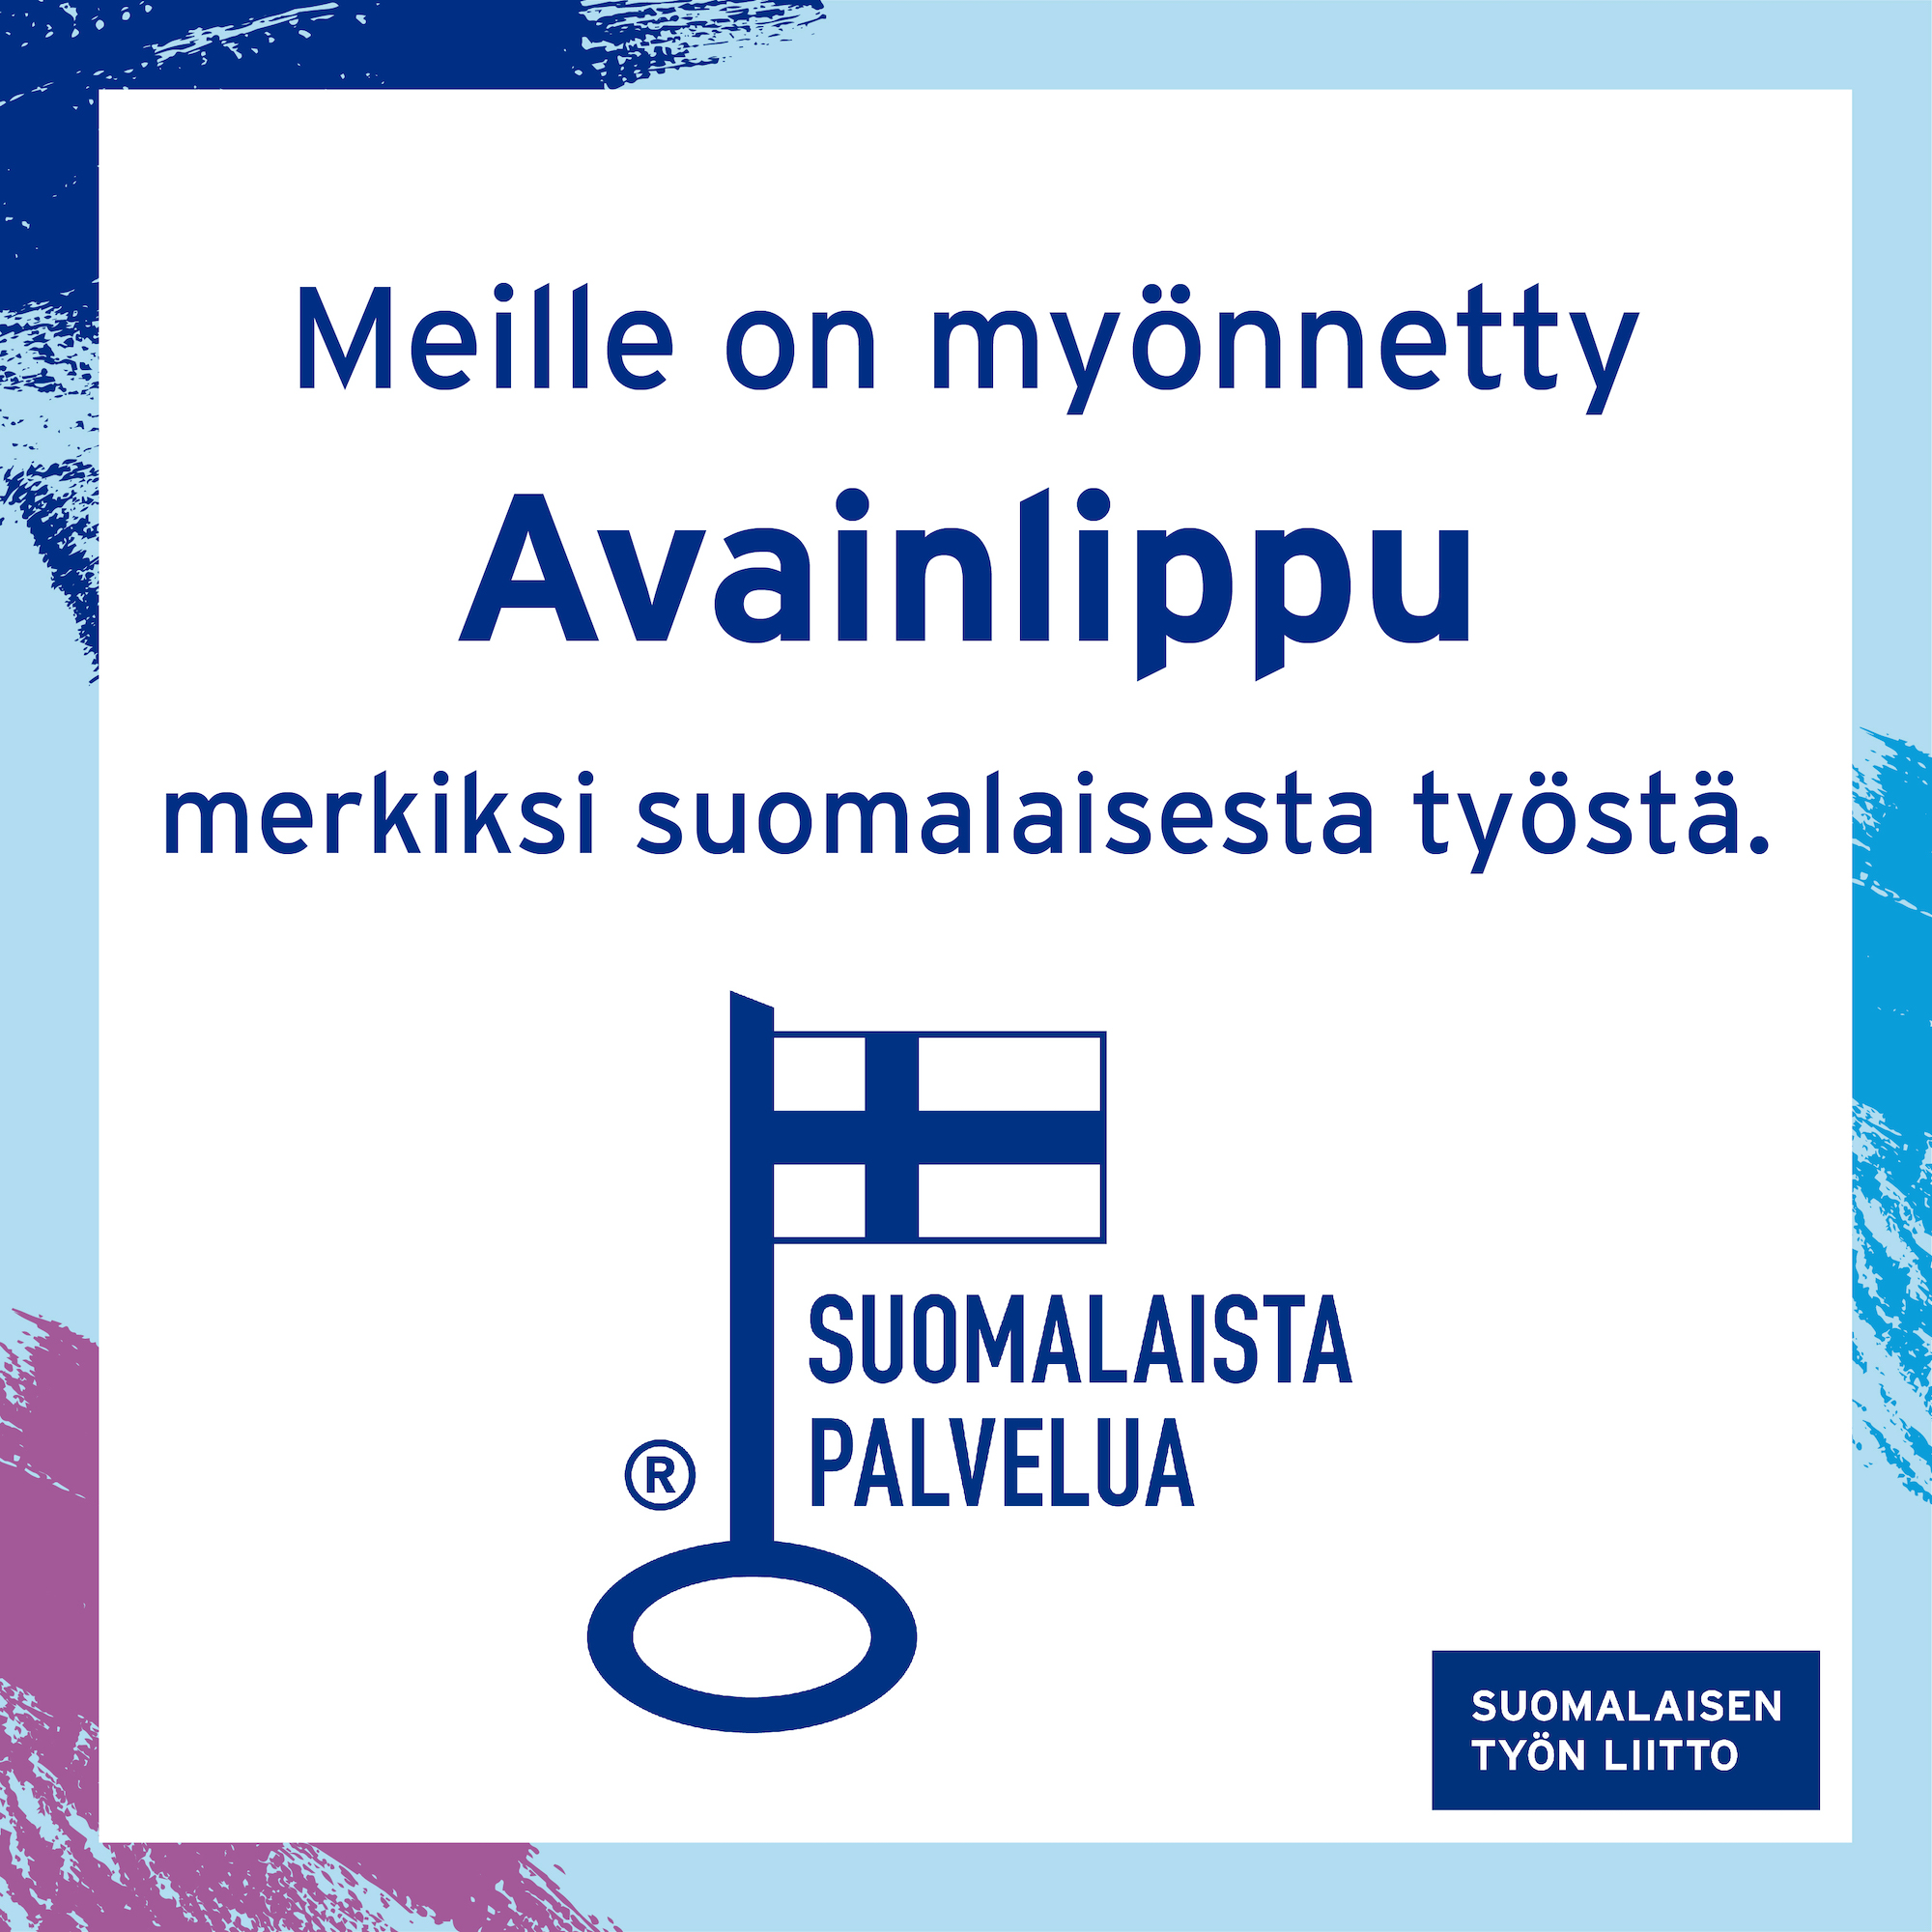 Artikkelikuva: Remonttilinkki.fi palvelulle on myönnetty Avainlippu